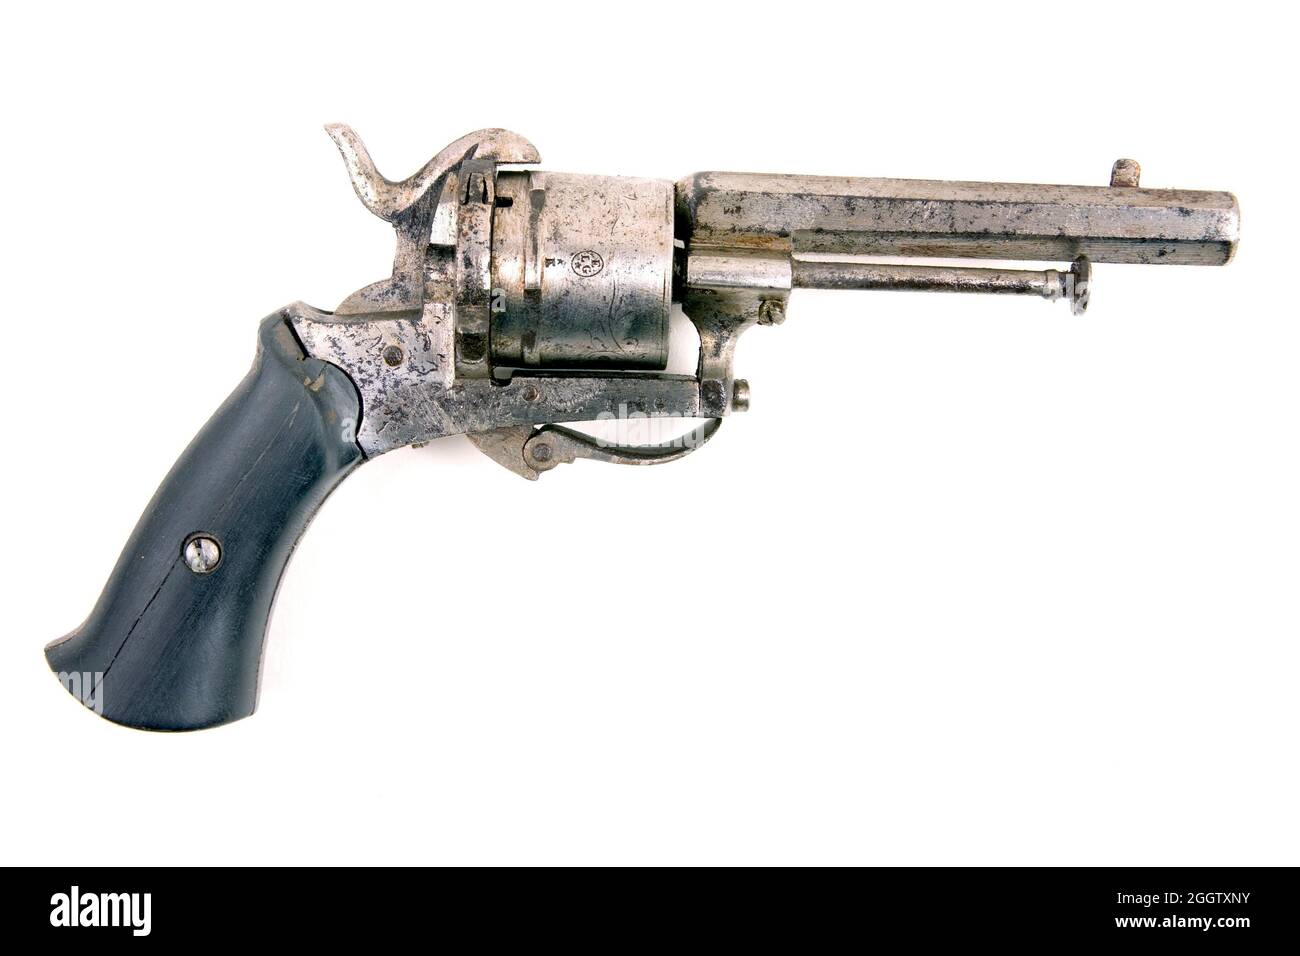 19th century pistol Stock Photo